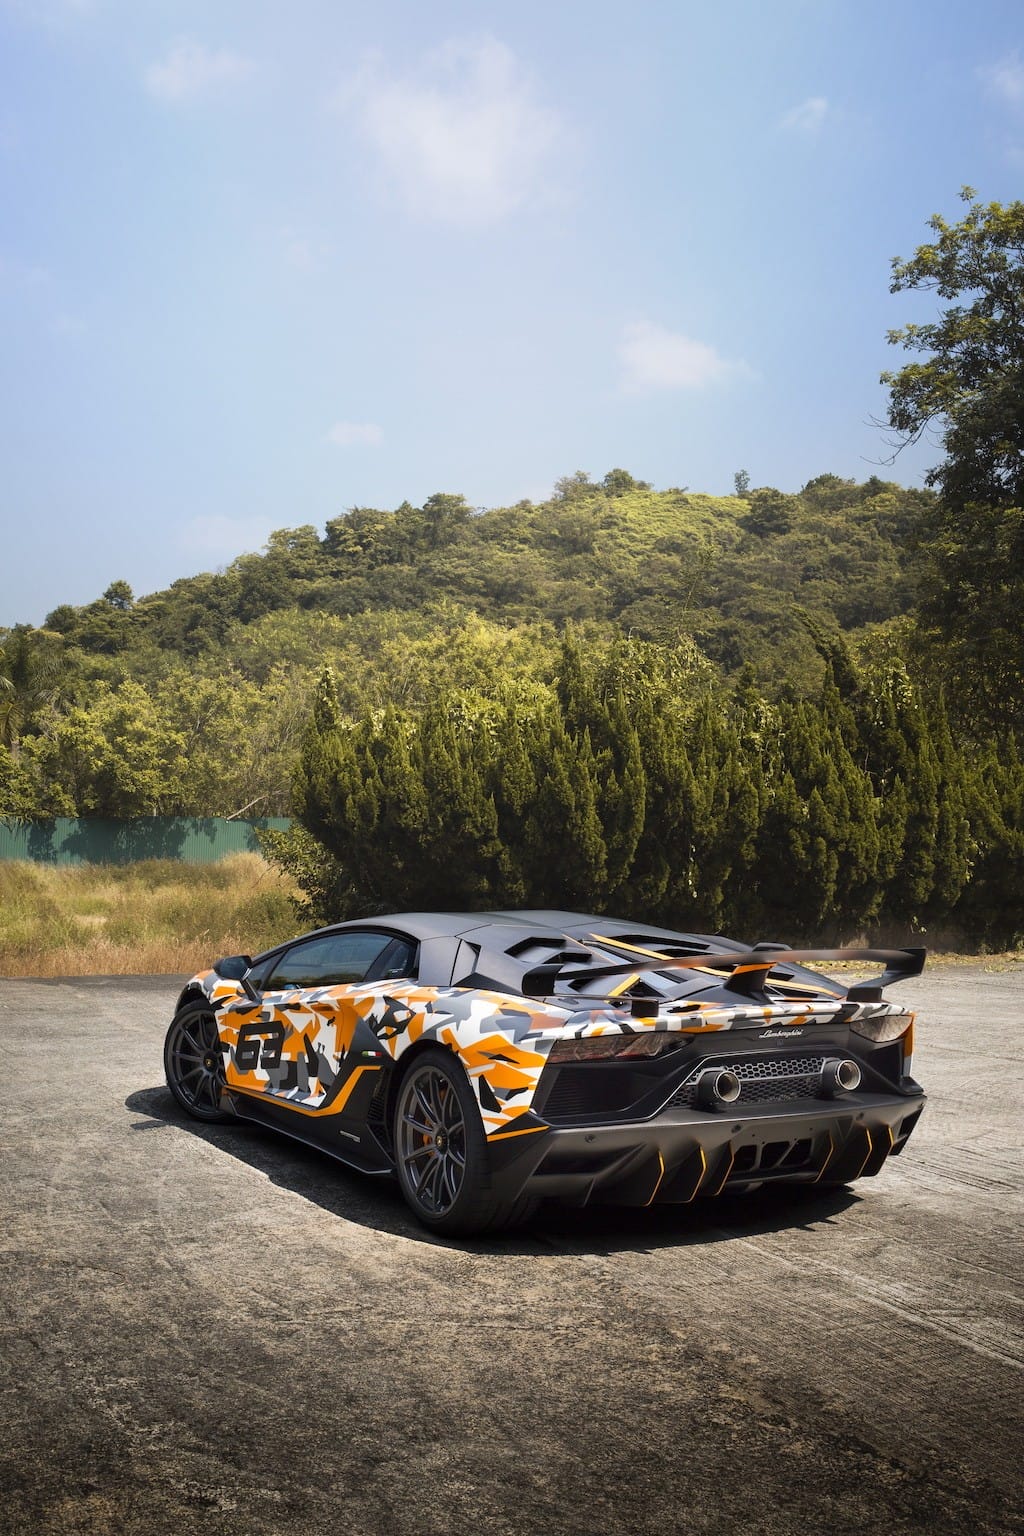 Đại gia Hồng Kông “chi đậm” để đặt Lamborghini Aventador SVJ 63, nhưng vẫn có ngoại hình bị “đụng hàng“ ảnh 10